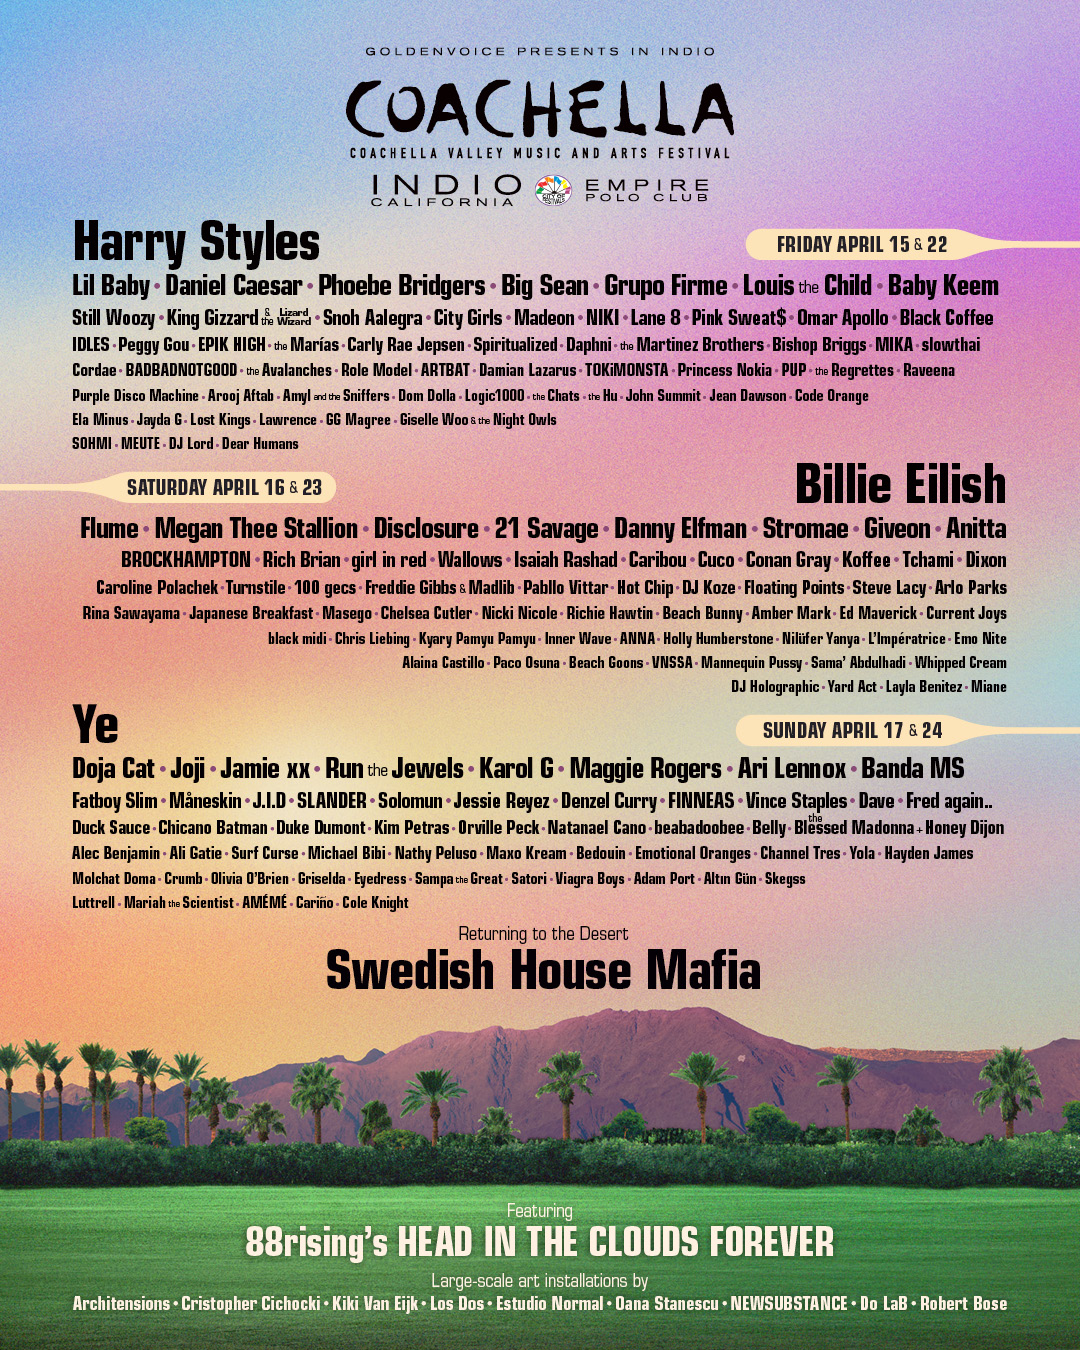 Confirmado: Harry Styles, Billie Eilish, Kanye West y la Banda MS en el cartel de Coachella 2022